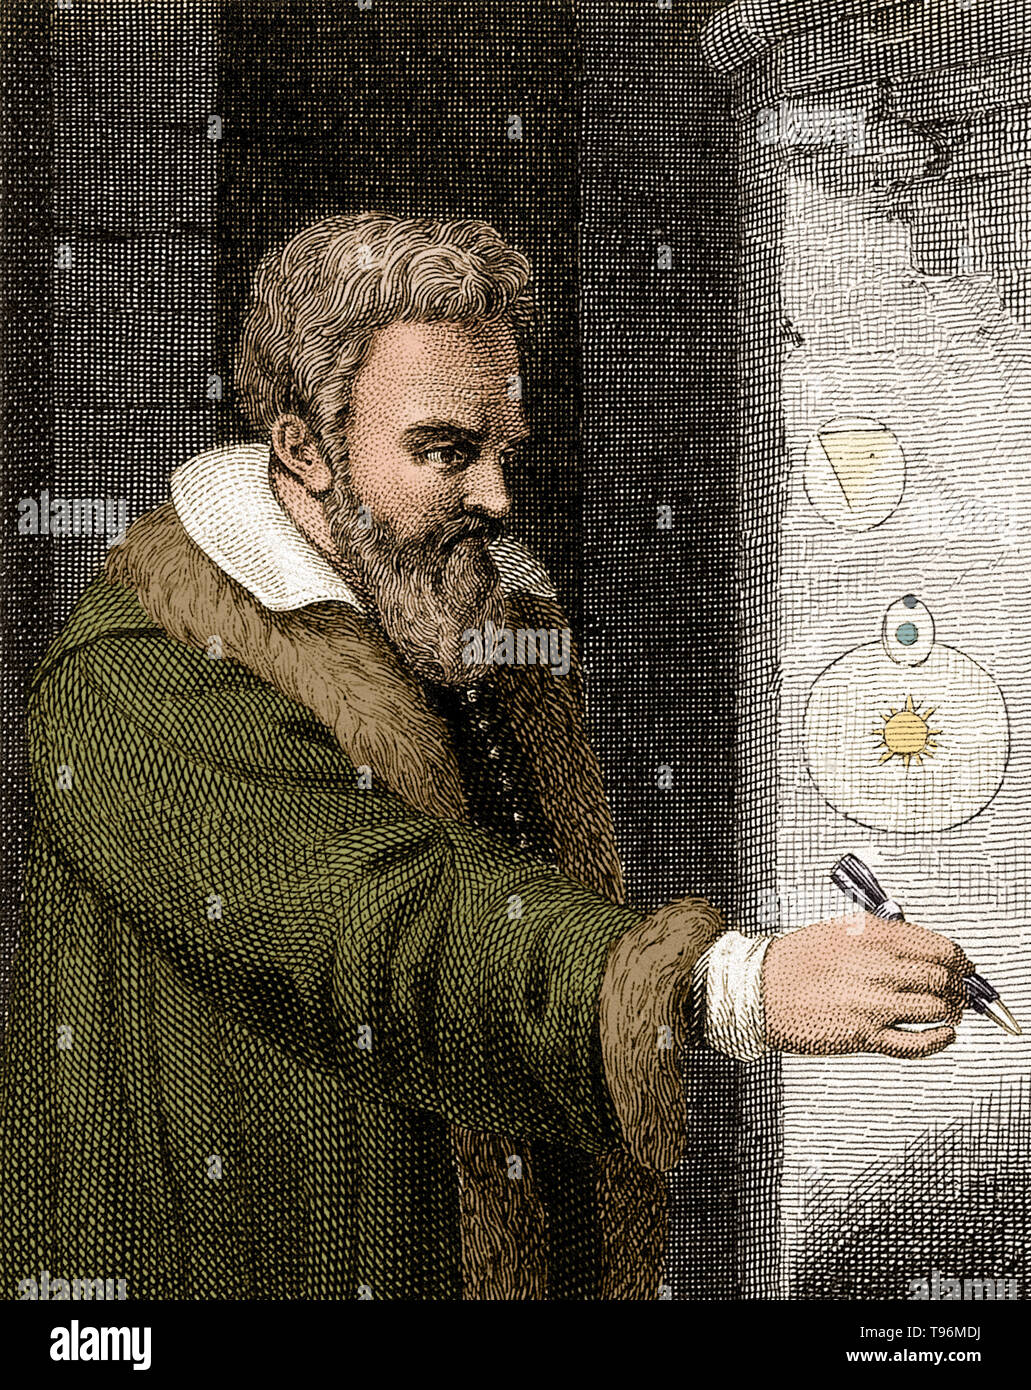 Galileo Galilei (Febbraio 15, 1564 - 8 gennaio 1642) era un fisico italiano, matematico, astronomo e filosofo che ha giocato un ruolo importante nella Rivoluzione Scientifica. I suoi successi includono miglioramenti al telescopio, importanti osservazioni astronomiche e supporto per Copernicanism. Egli ha scoperto le montagne della Luna, i quattro maggiori lune di Giove e numerose stelle dim. Ha studiato il moto di un pendolo e ha scoperto che le altalene hanno un periodo di tempo costante. Foto Stock